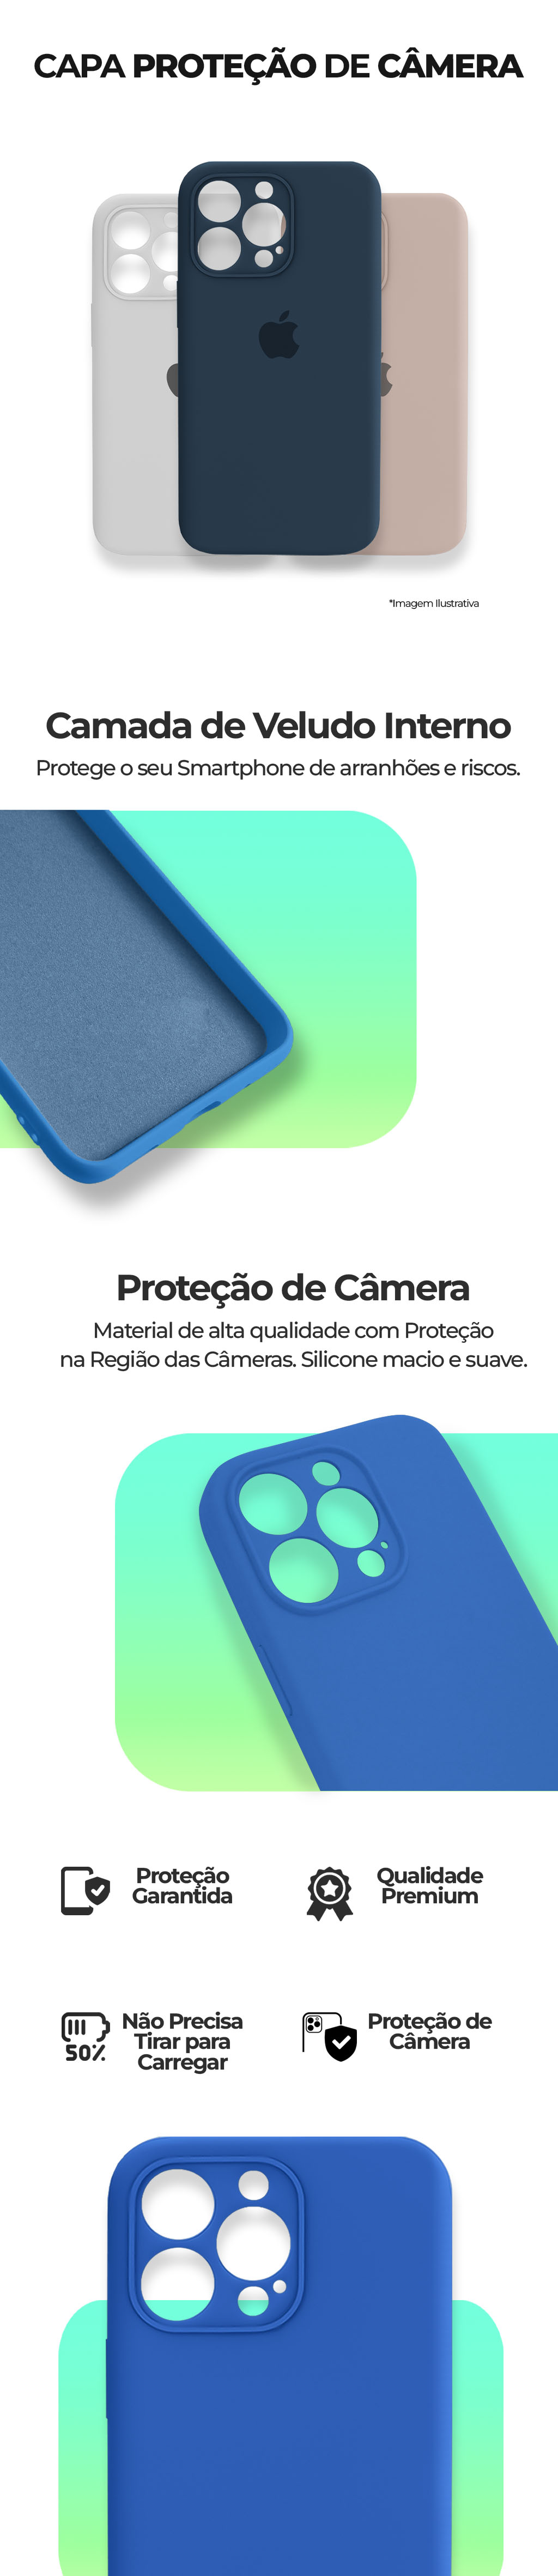 Capinha Celular iPhone 13 Pro Max com Proteção de Câmera